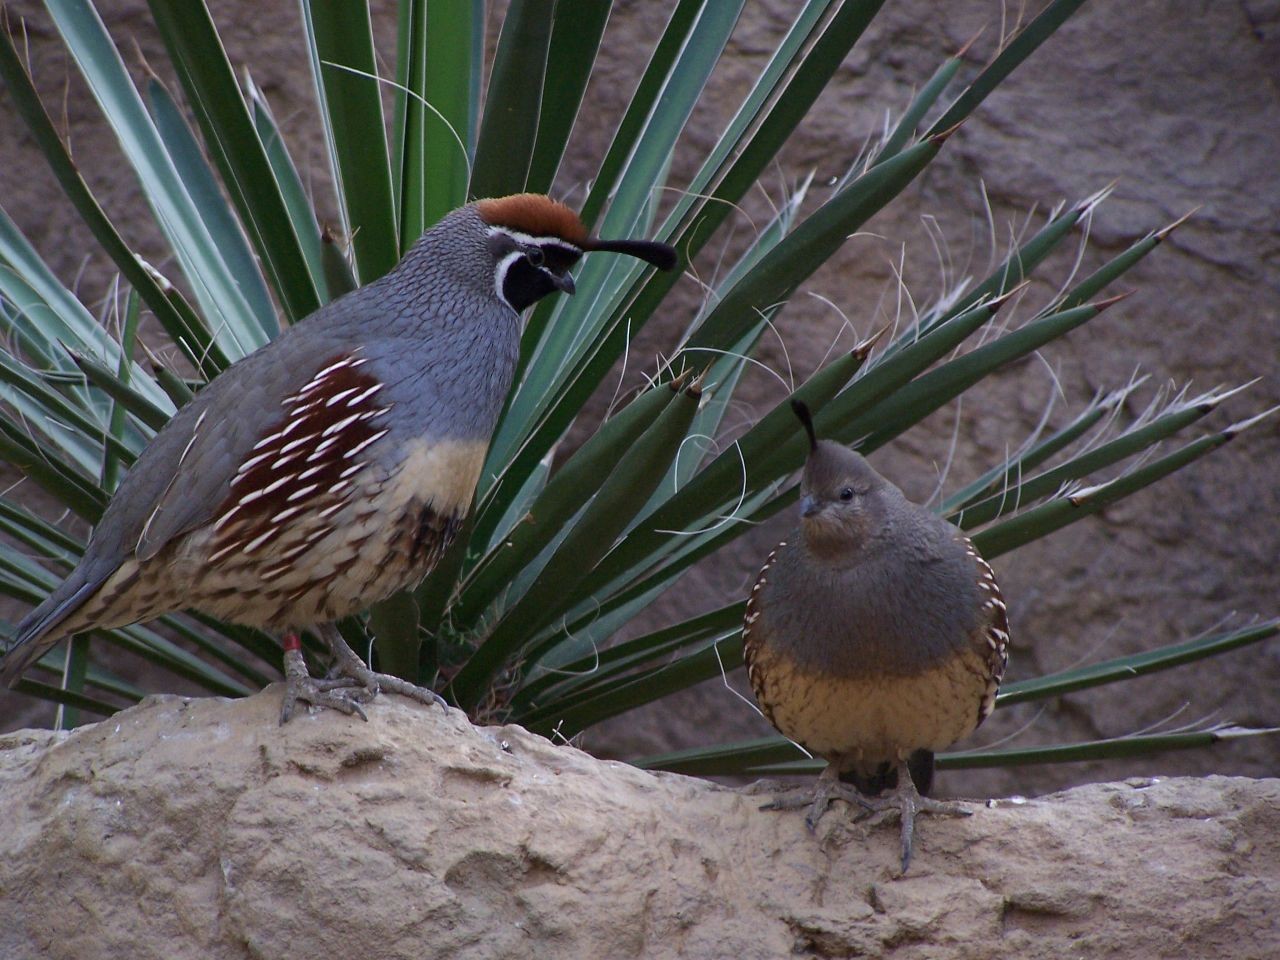 Crested quails (Callipepla)